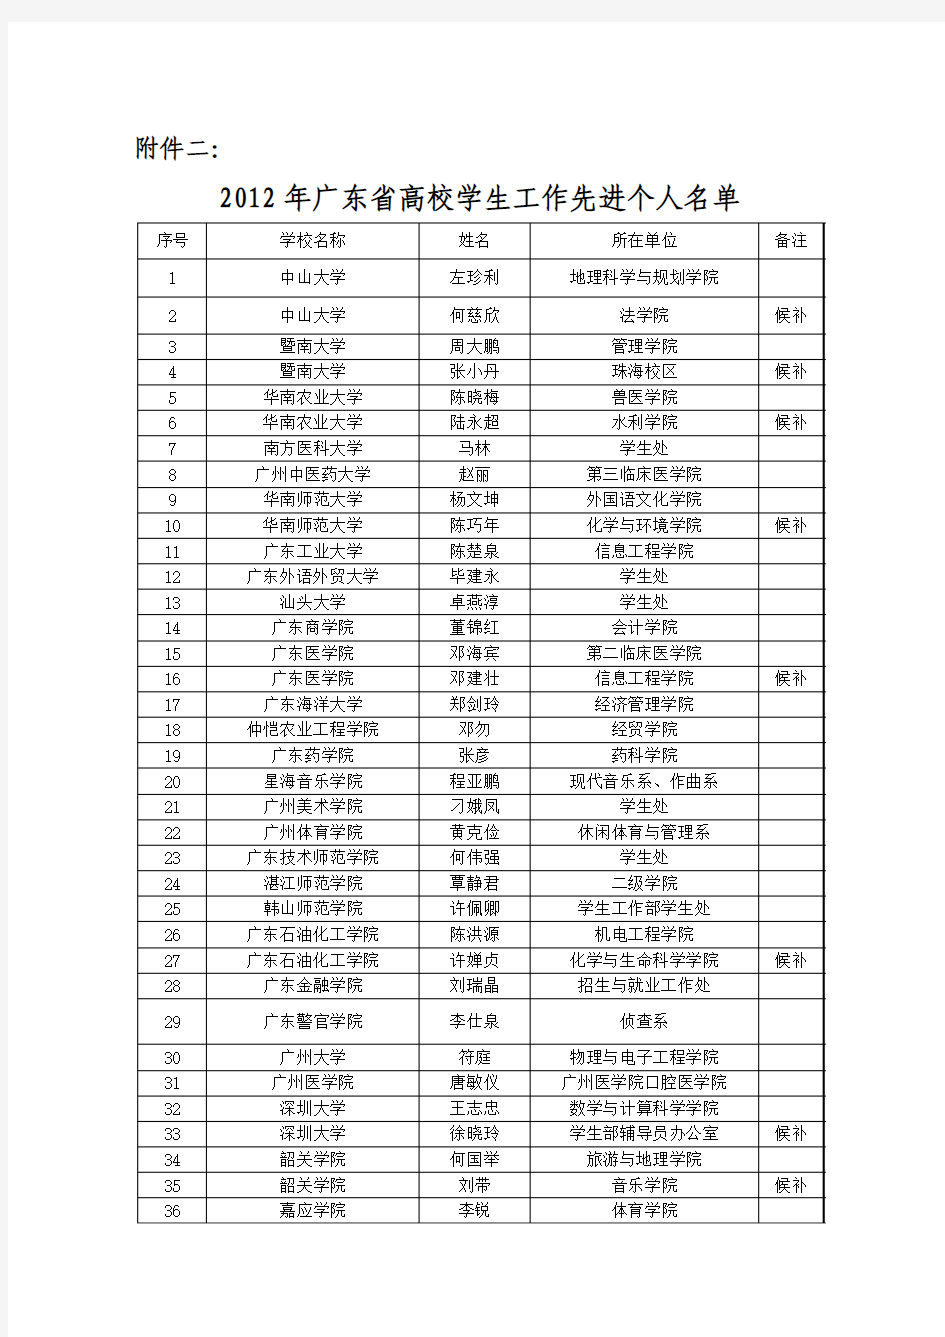 2011年广东省高校学生工作先进个人名单